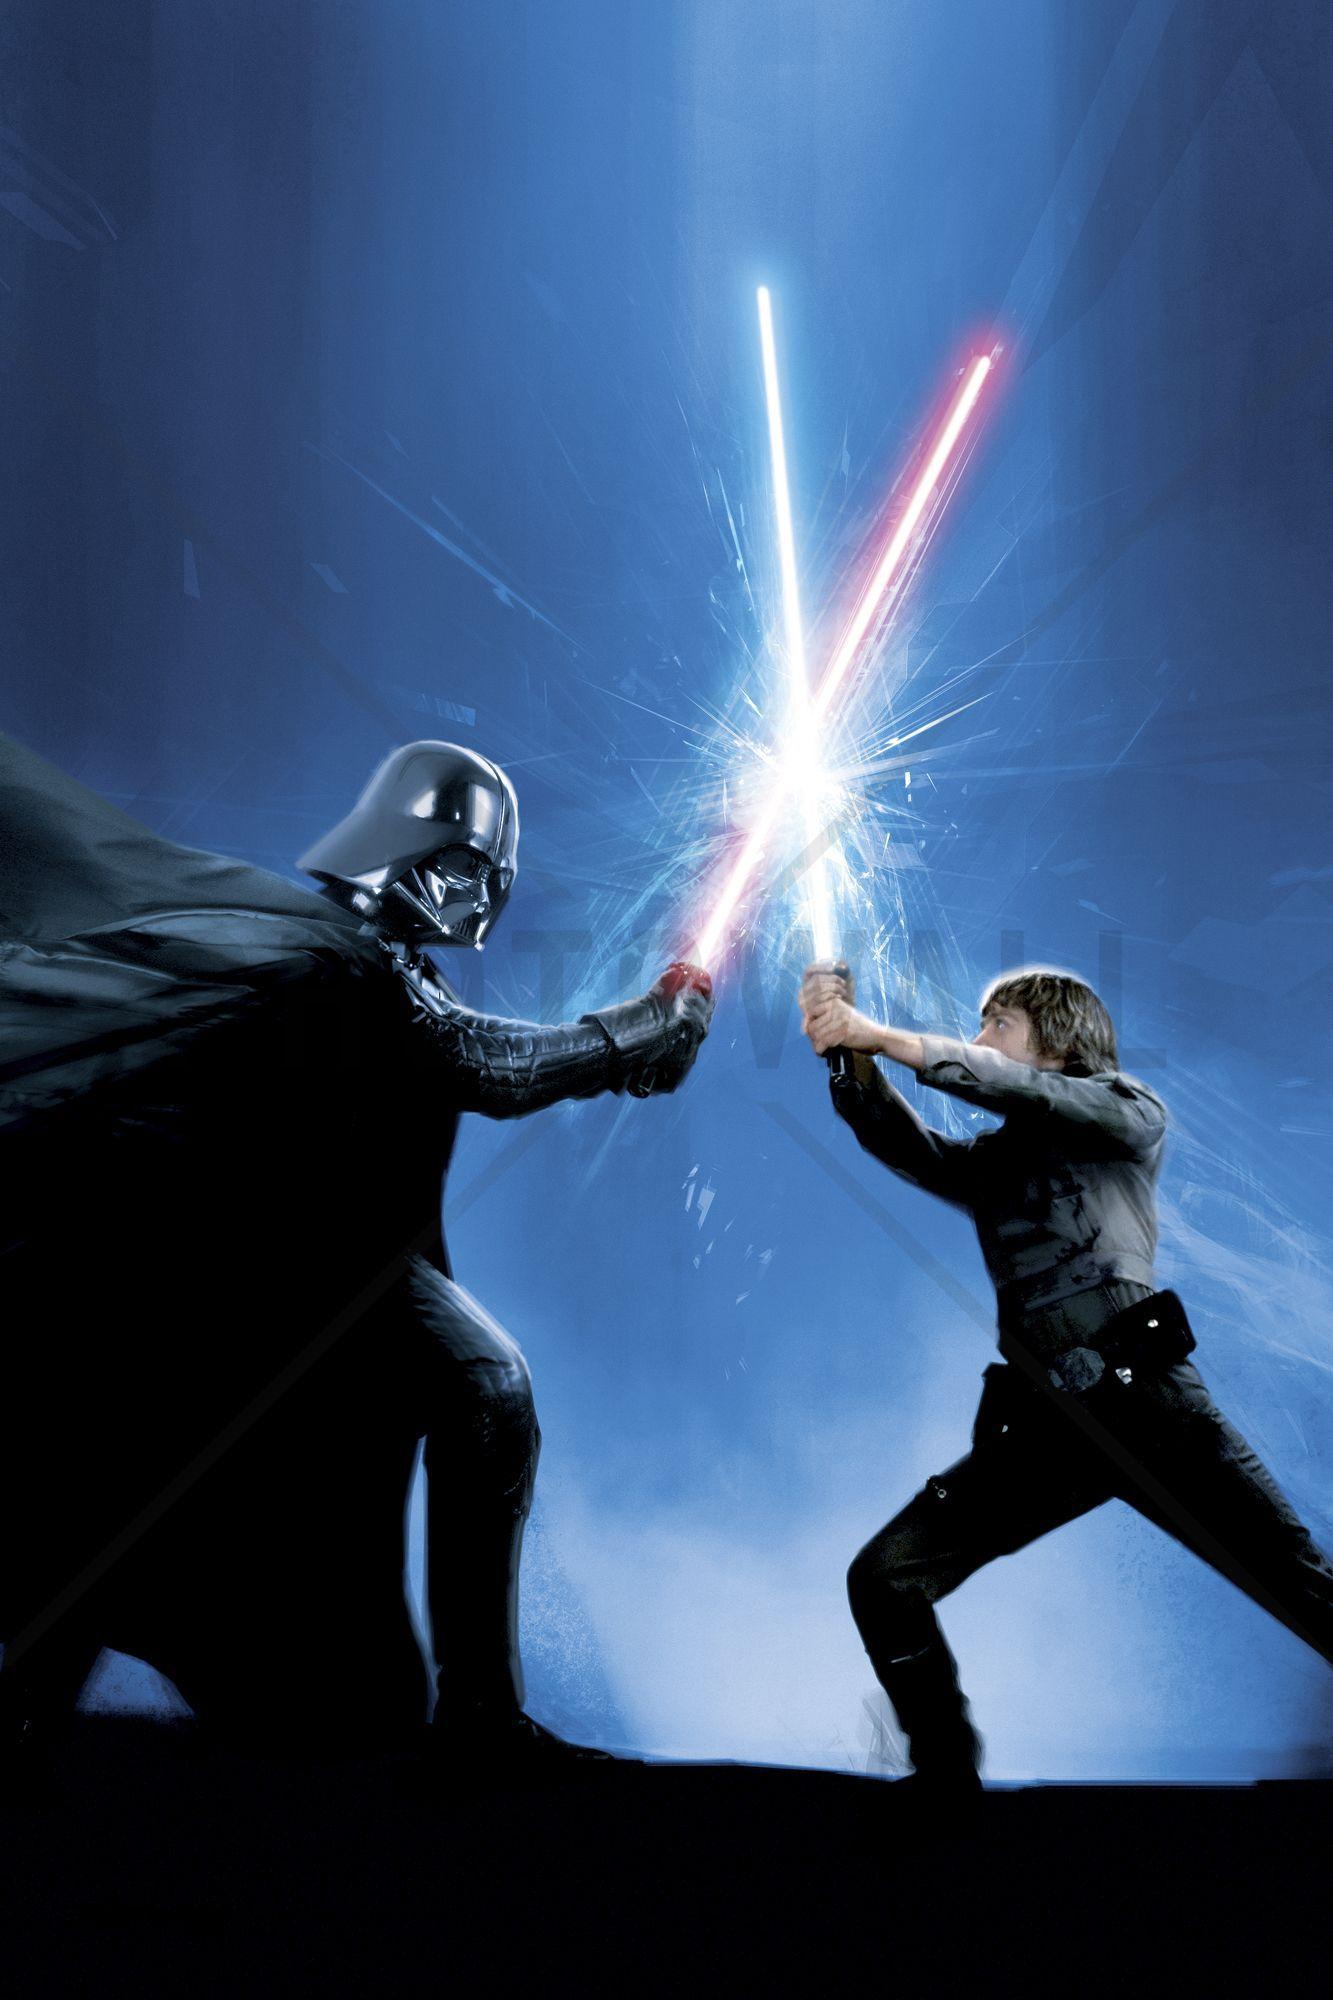 Luke Skywalker Vs Darth Vader Emperor Palpatin Wallpapers